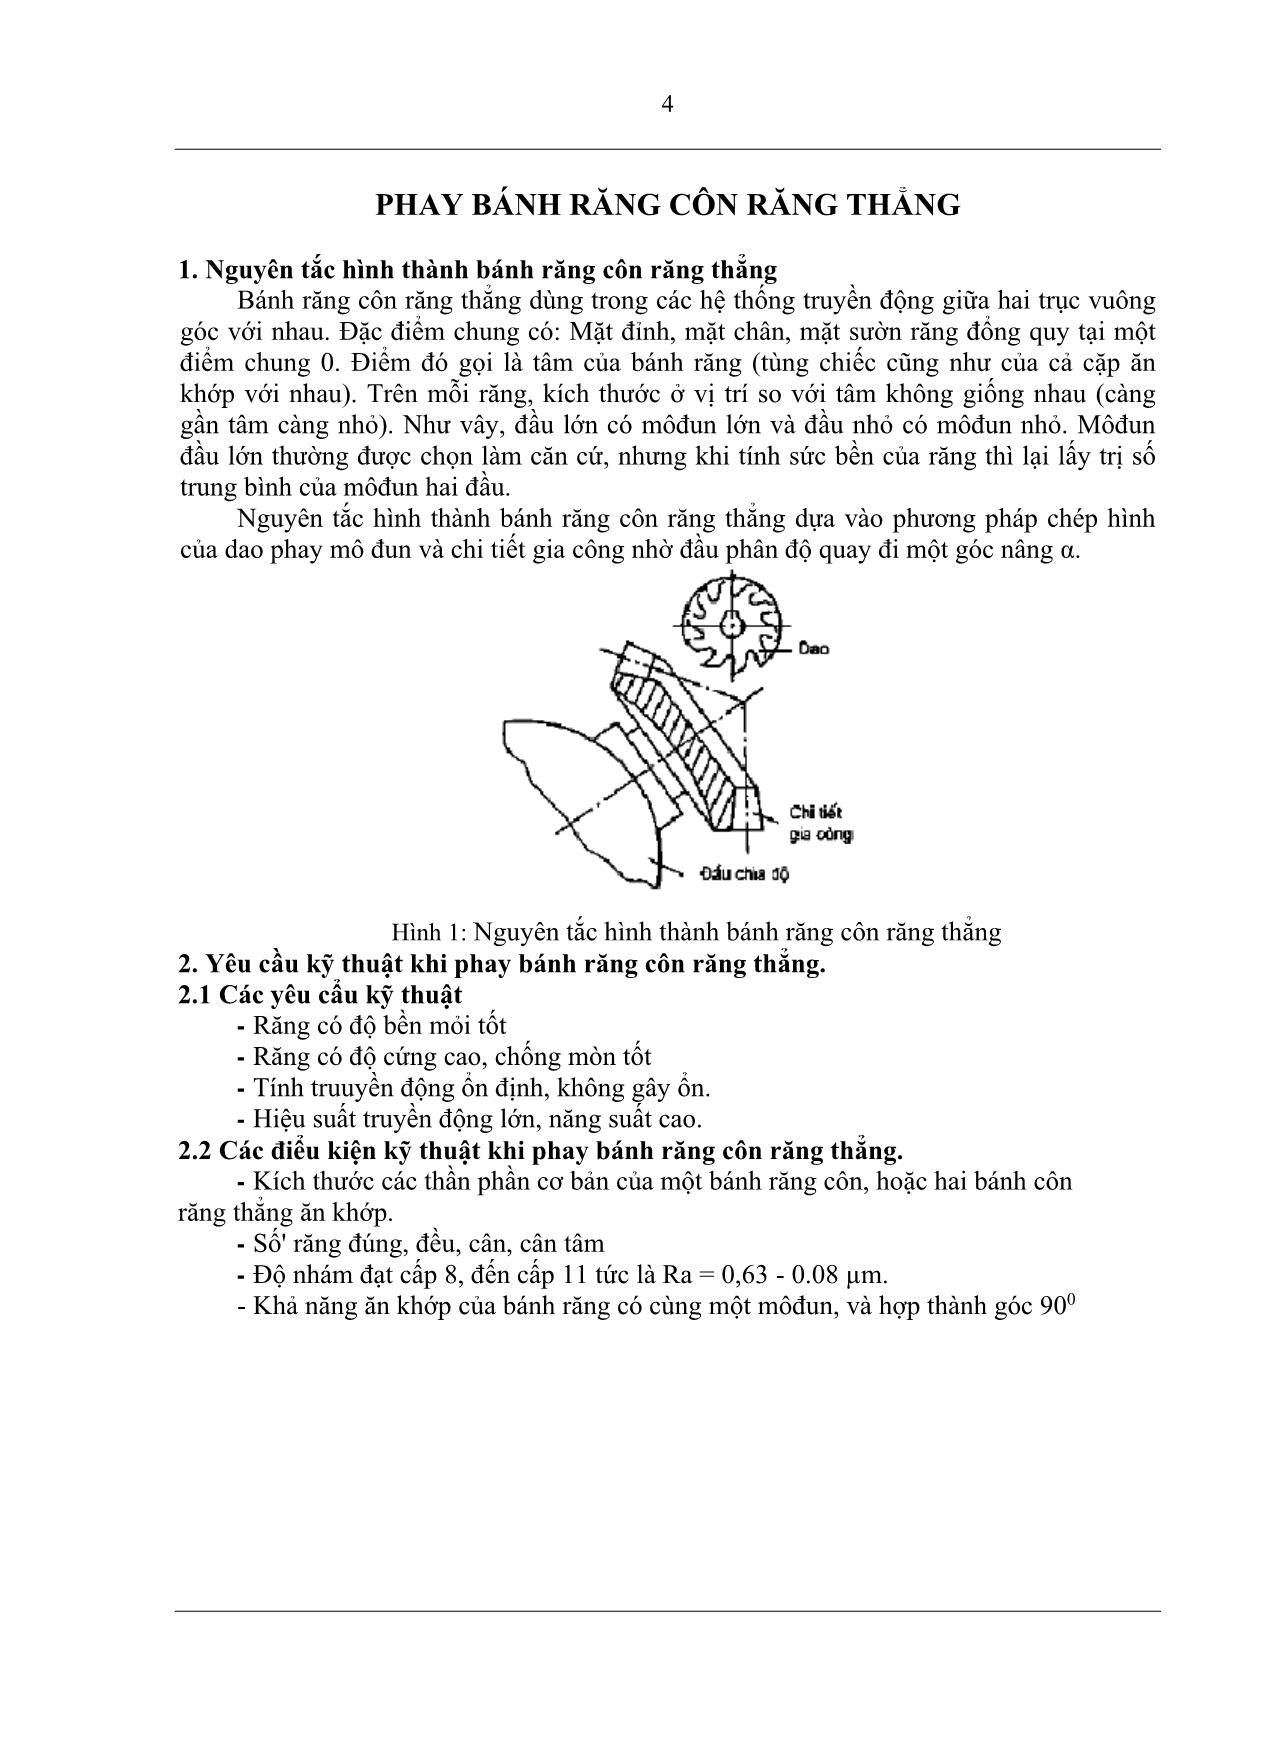 Giáo trình Phay bánh răng côn răng thẳng trang 4